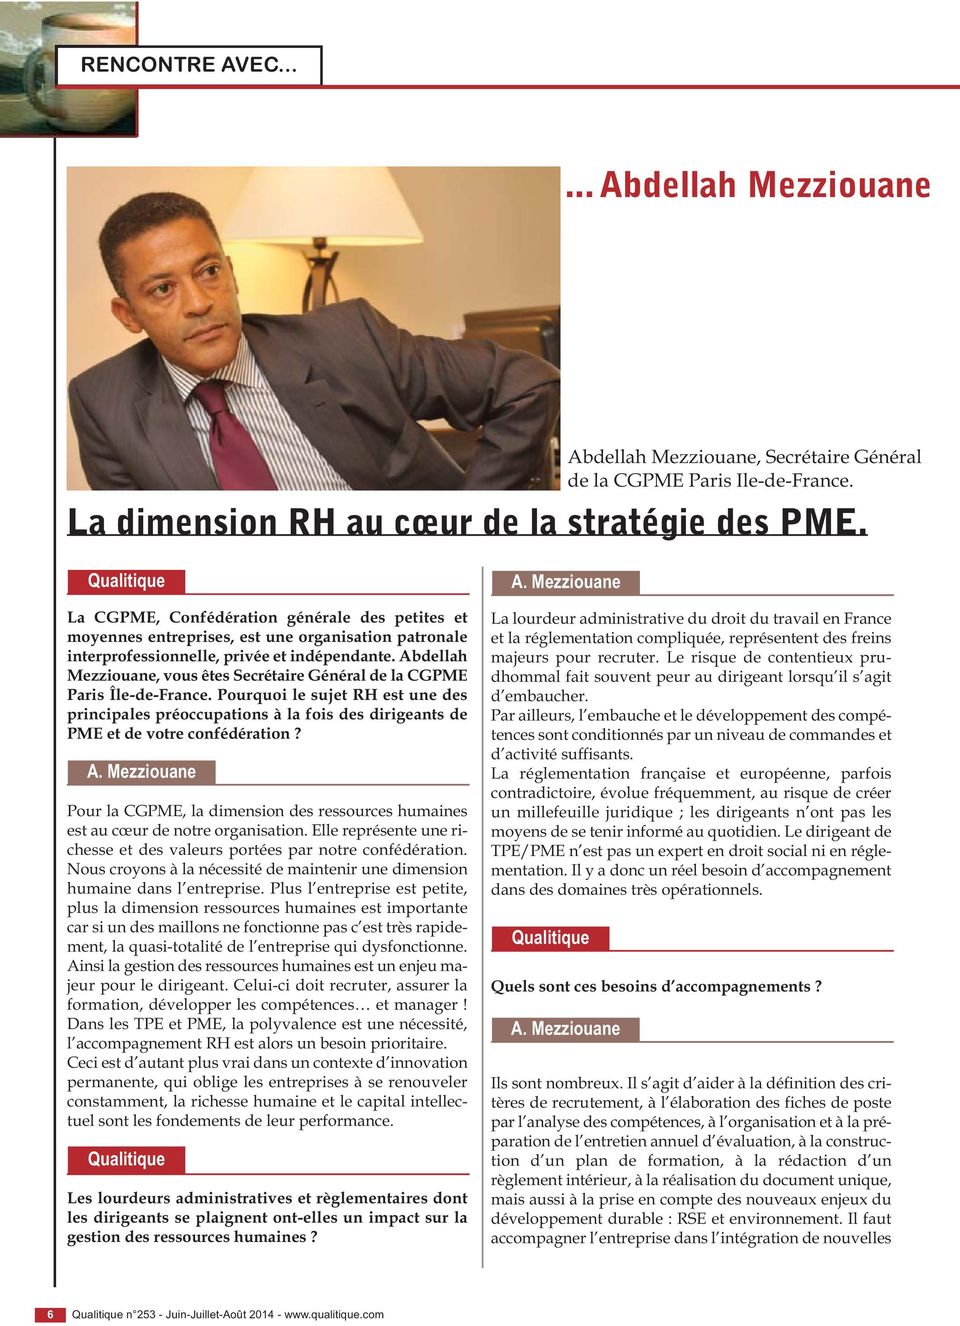 Abdellah Mezziouane, vous êtes Secrétaire Général de la CGPME Paris Île-de-France.